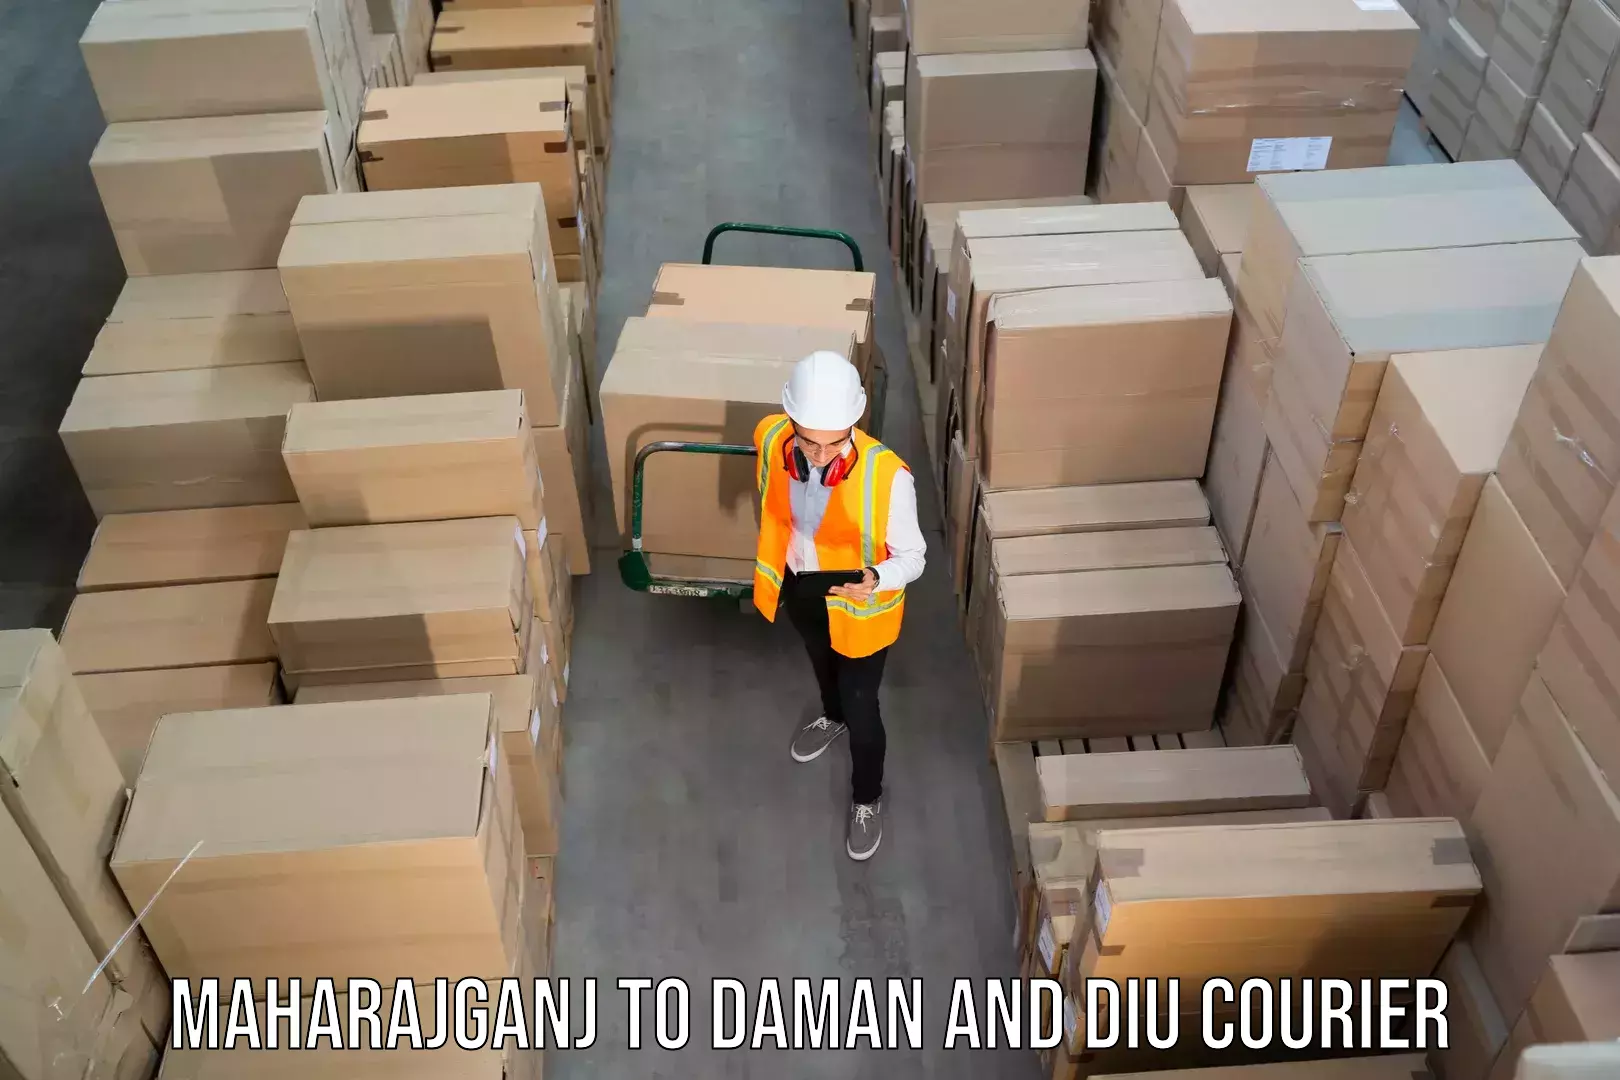 24-hour courier service Maharajganj to Daman and Diu